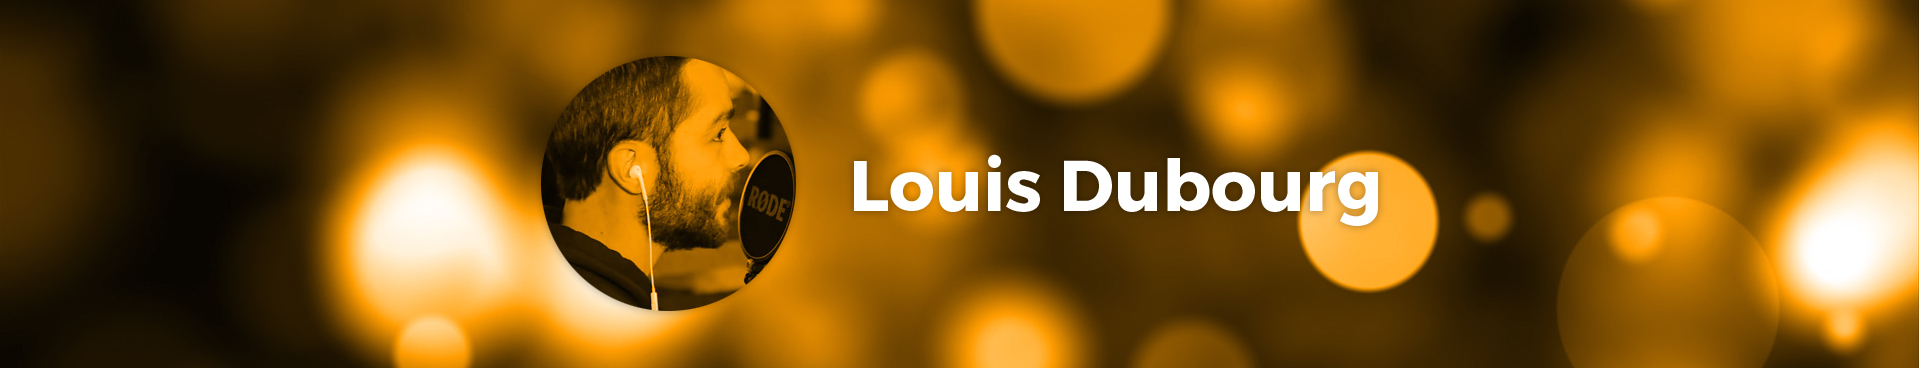 Louis Dubourg, artiste Le Spot du Rire